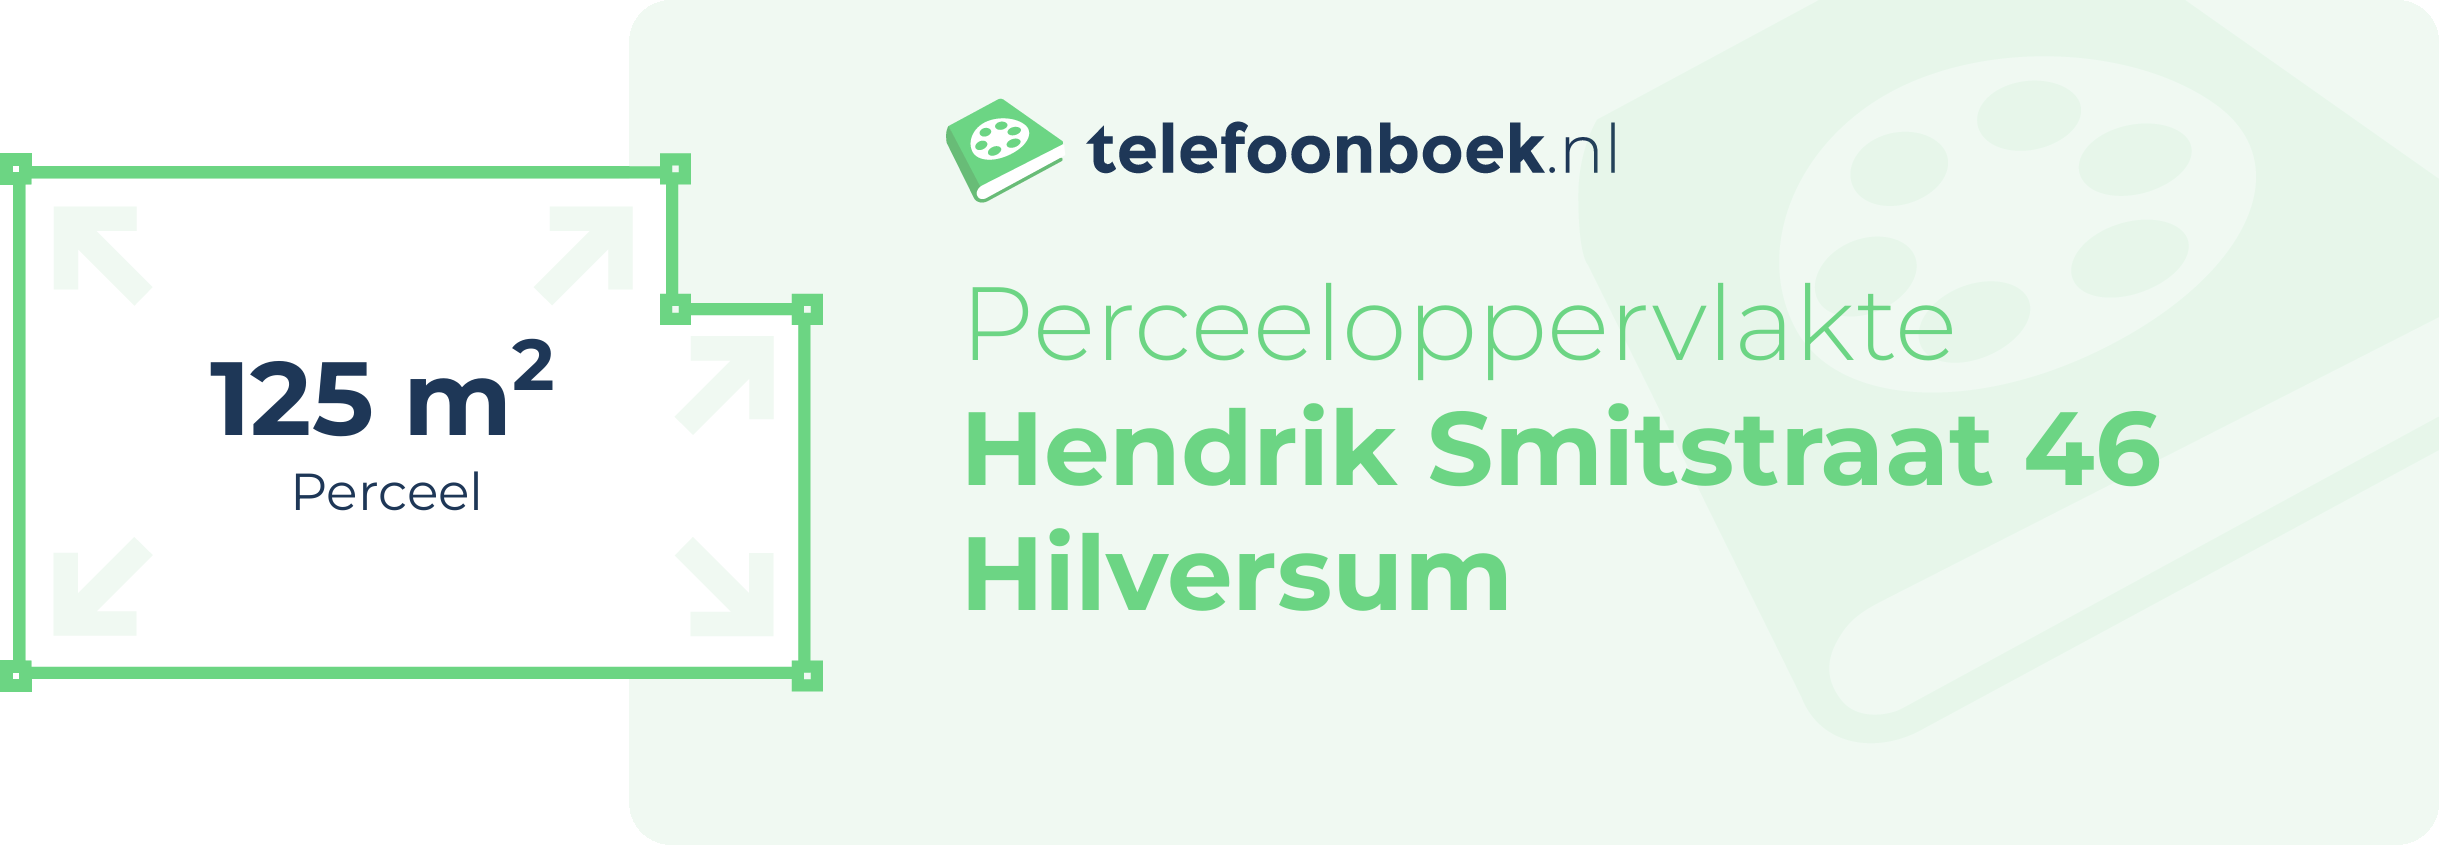 Perceeloppervlakte Hendrik Smitstraat 46 Hilversum